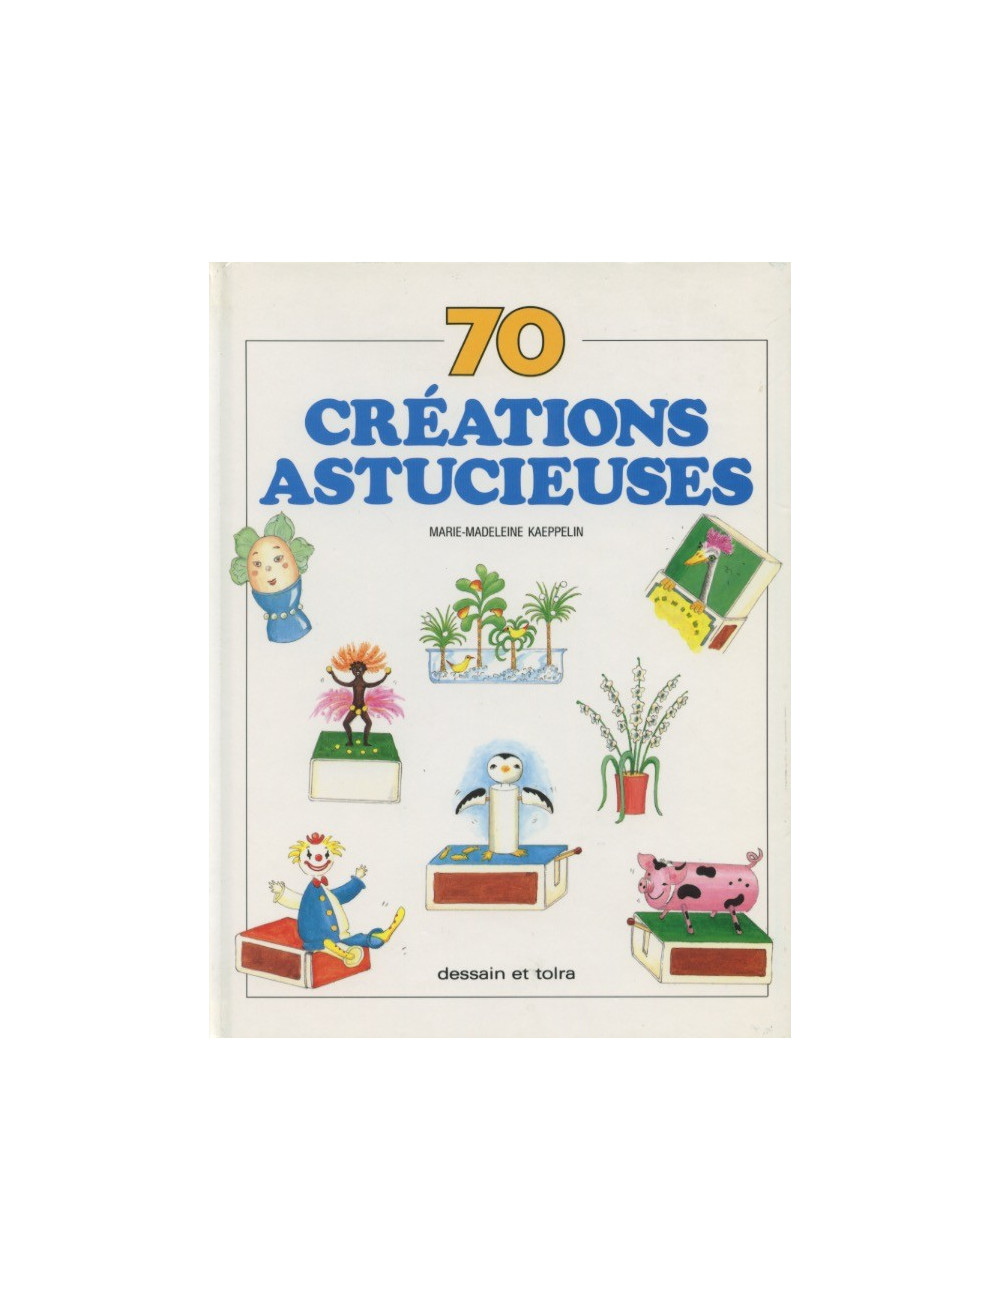 70 CRÉATIONS ASTUCIEUSES (Marie- Madeleine Kaeppelin)